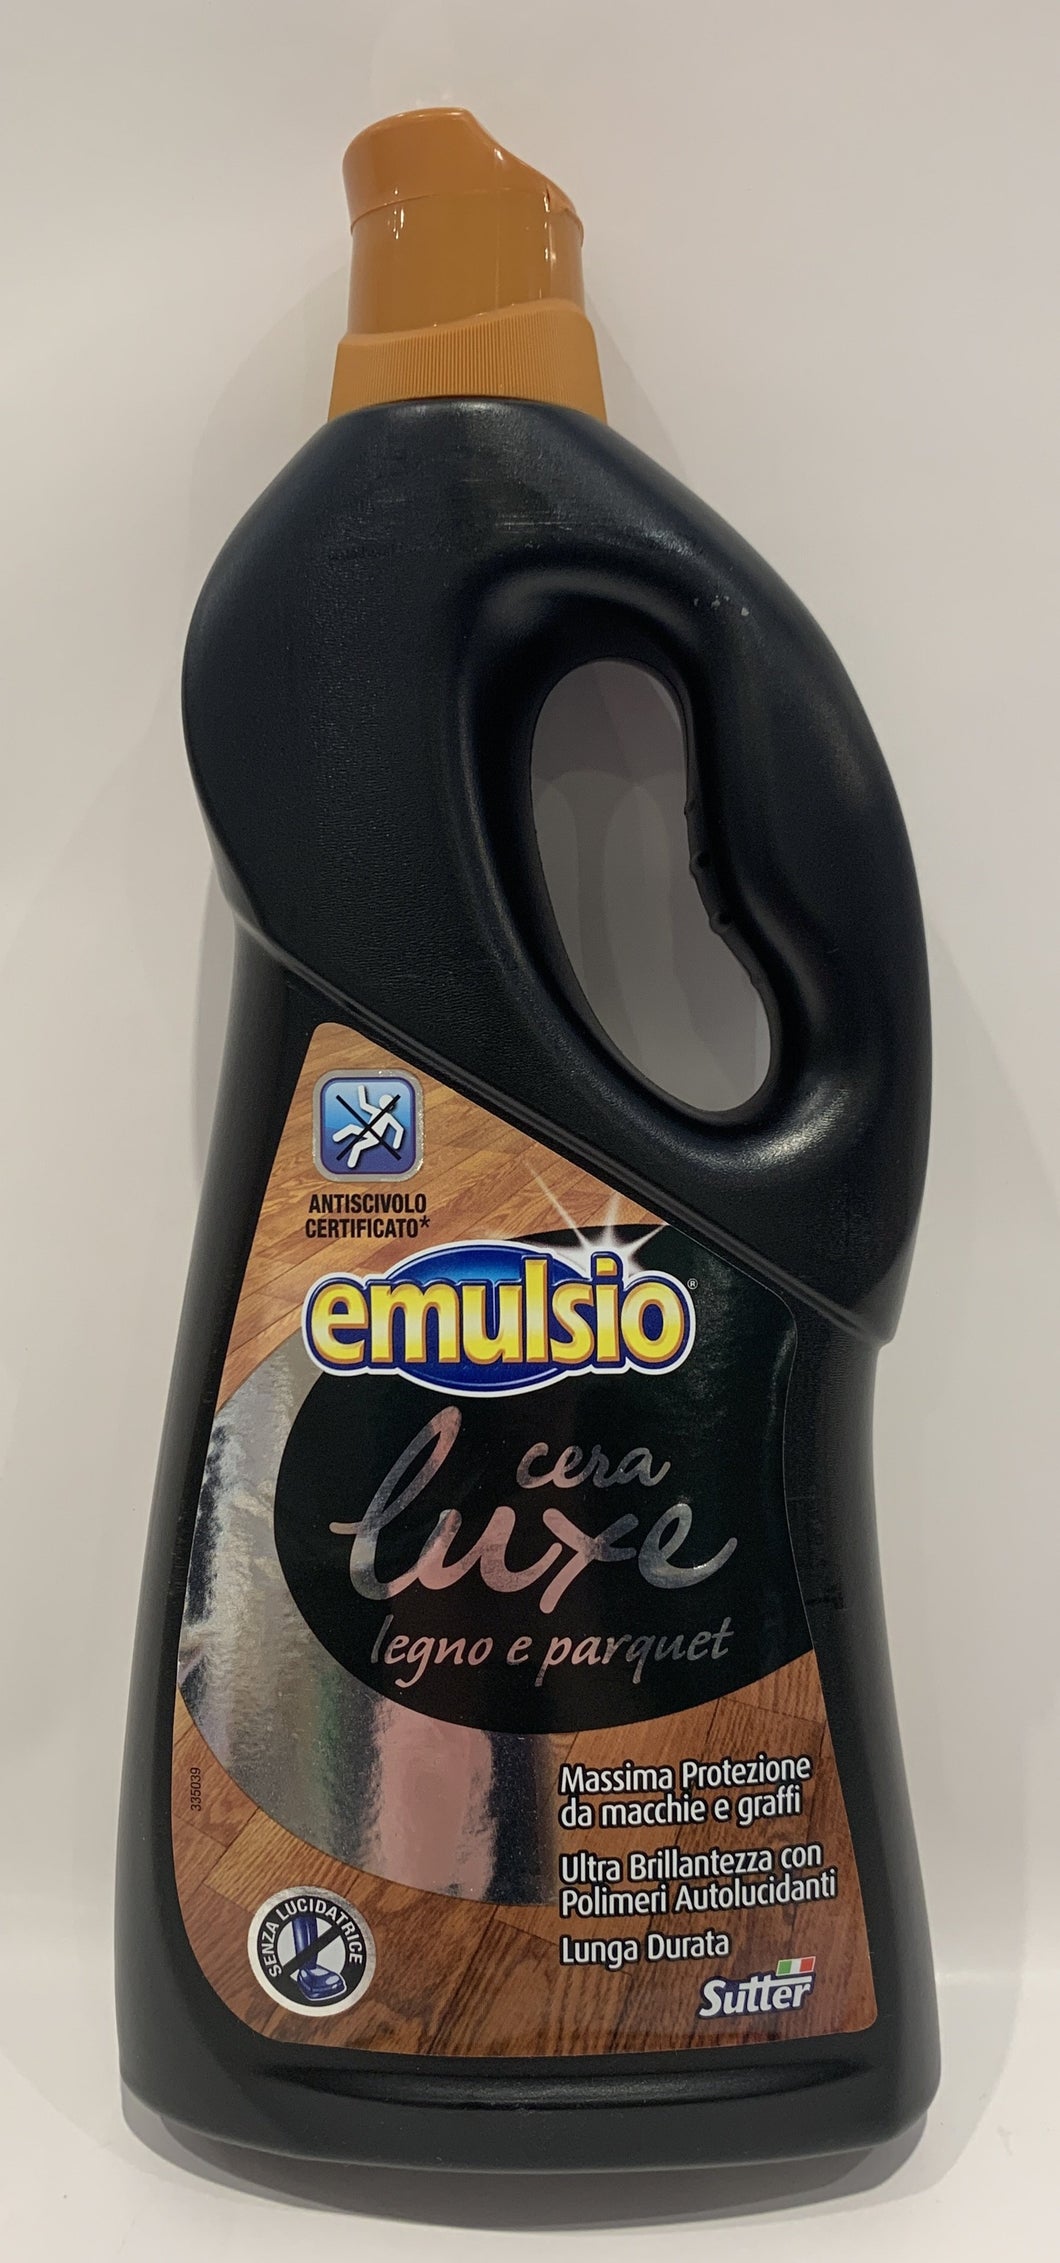 Emulsio Lux Legno e parquet - 750 ml